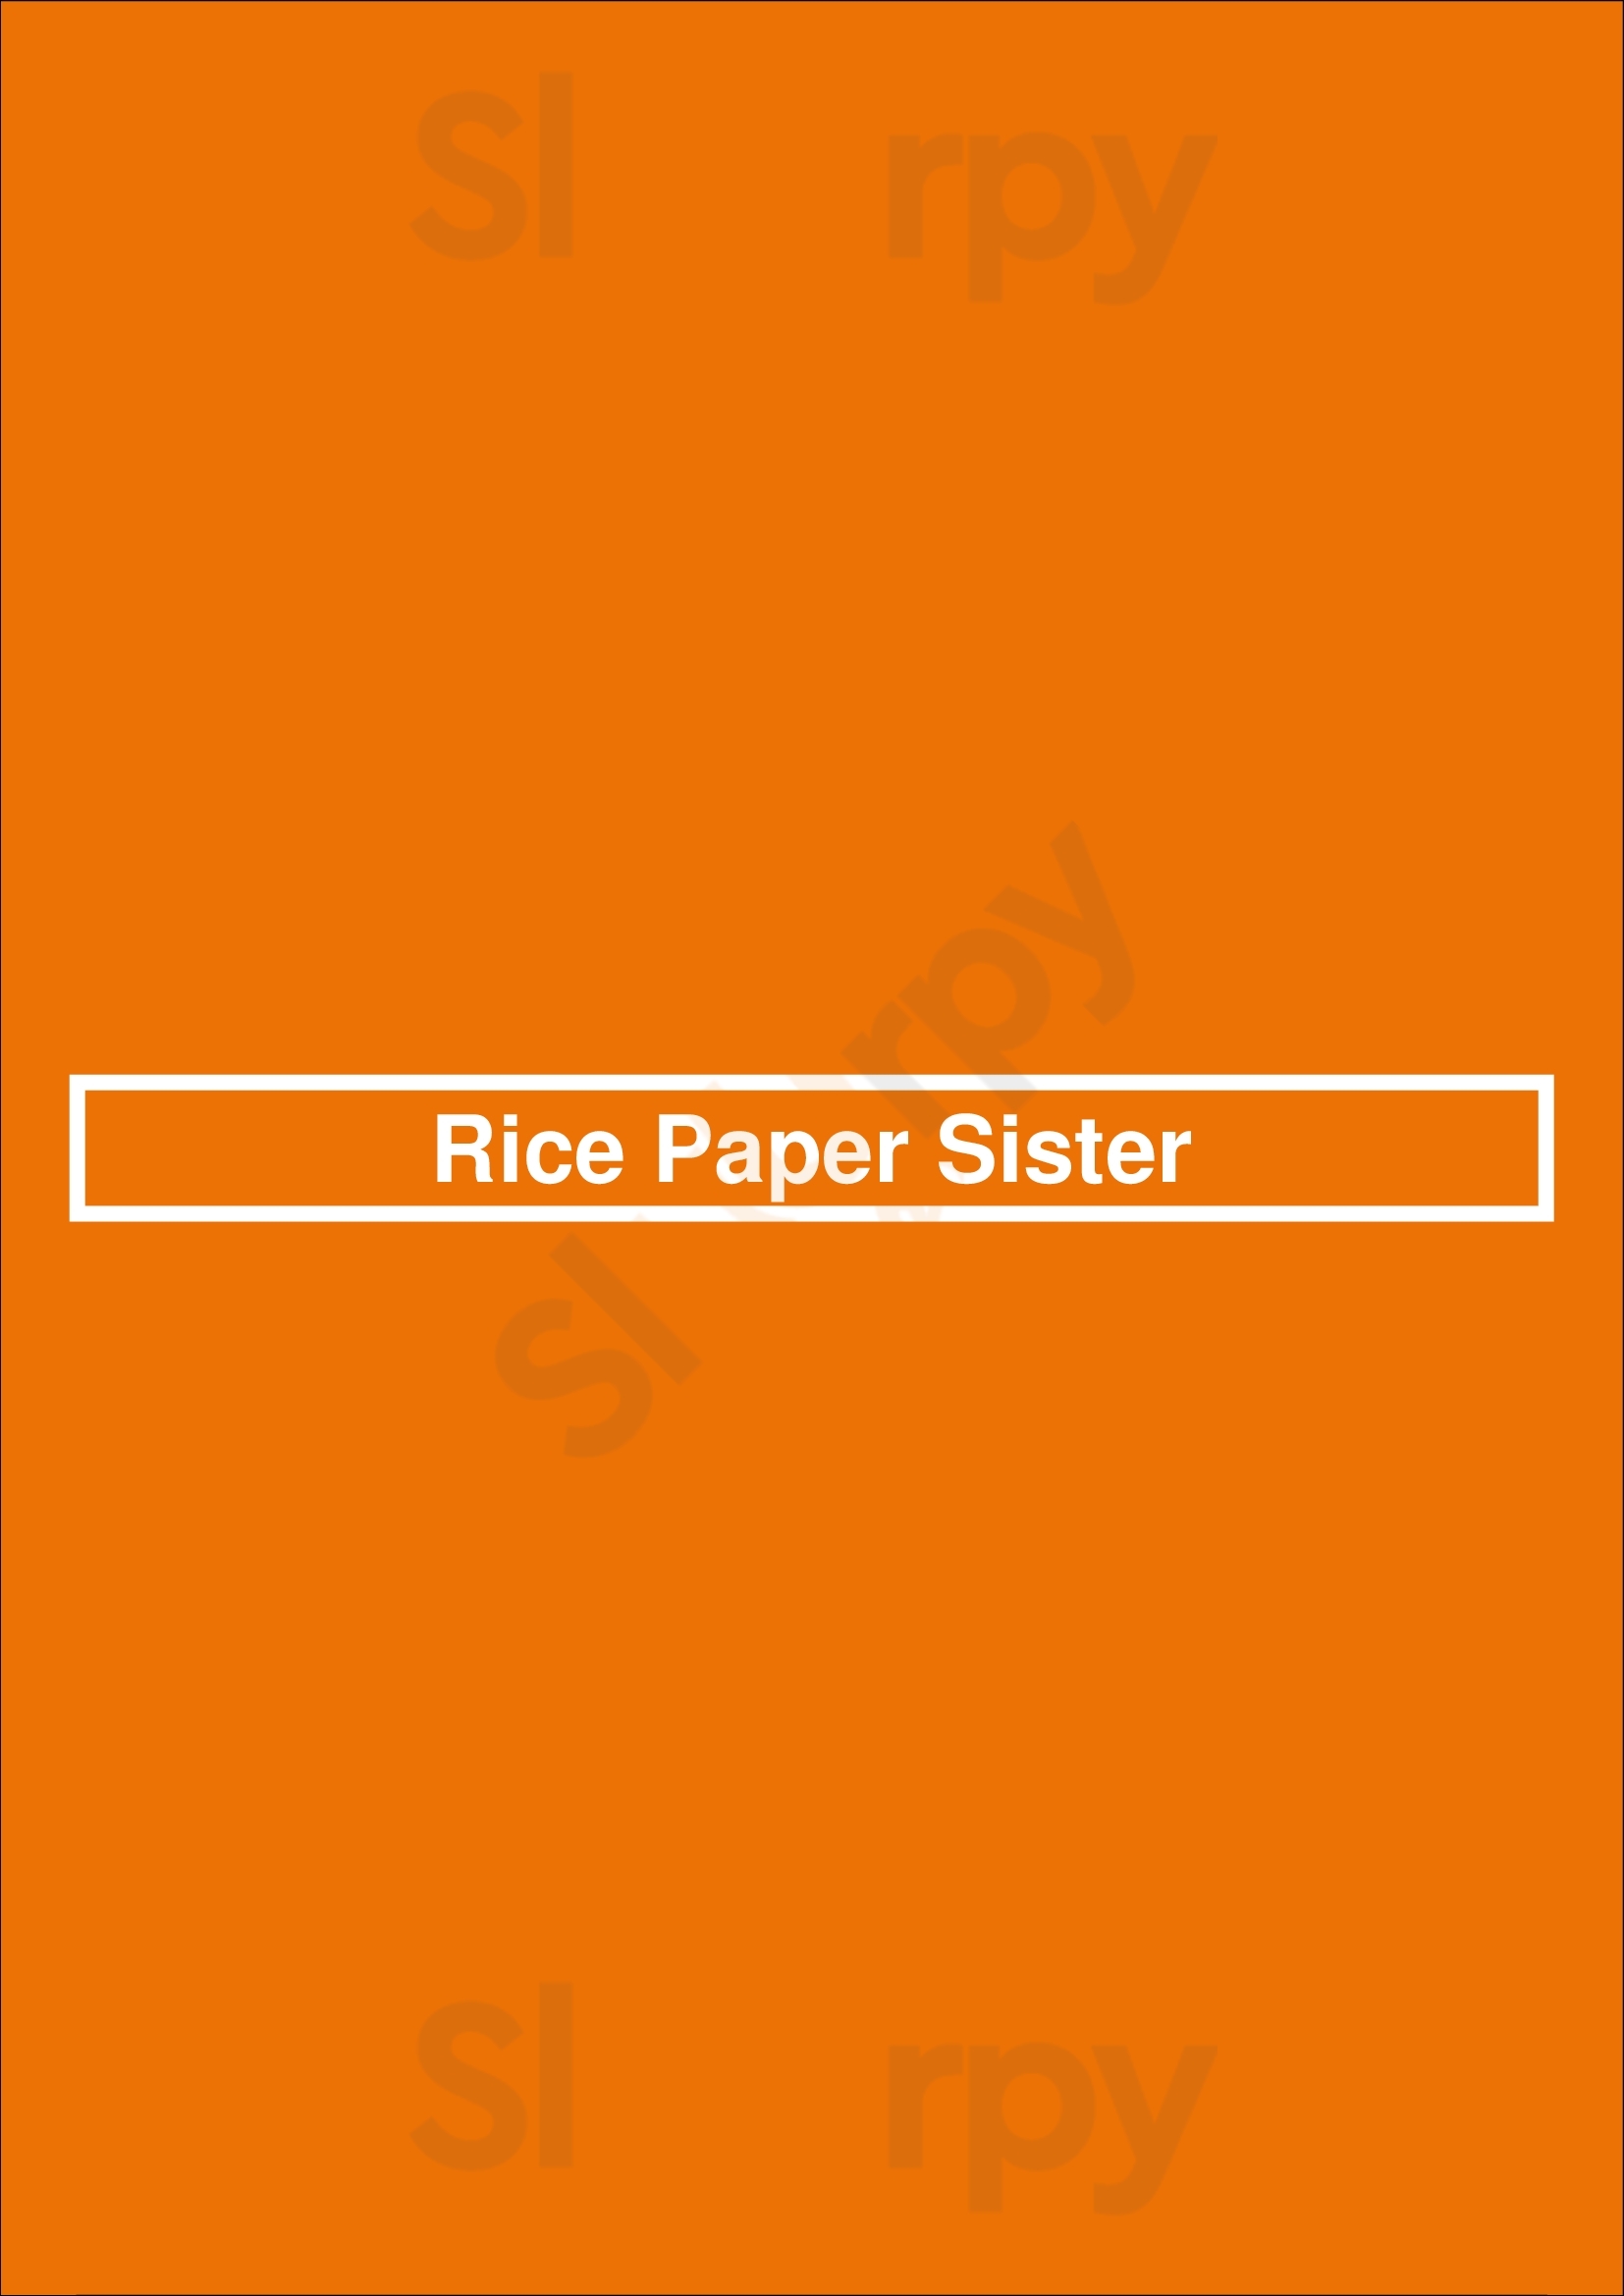 Rice Paper Sister Melbourne Menu - 1